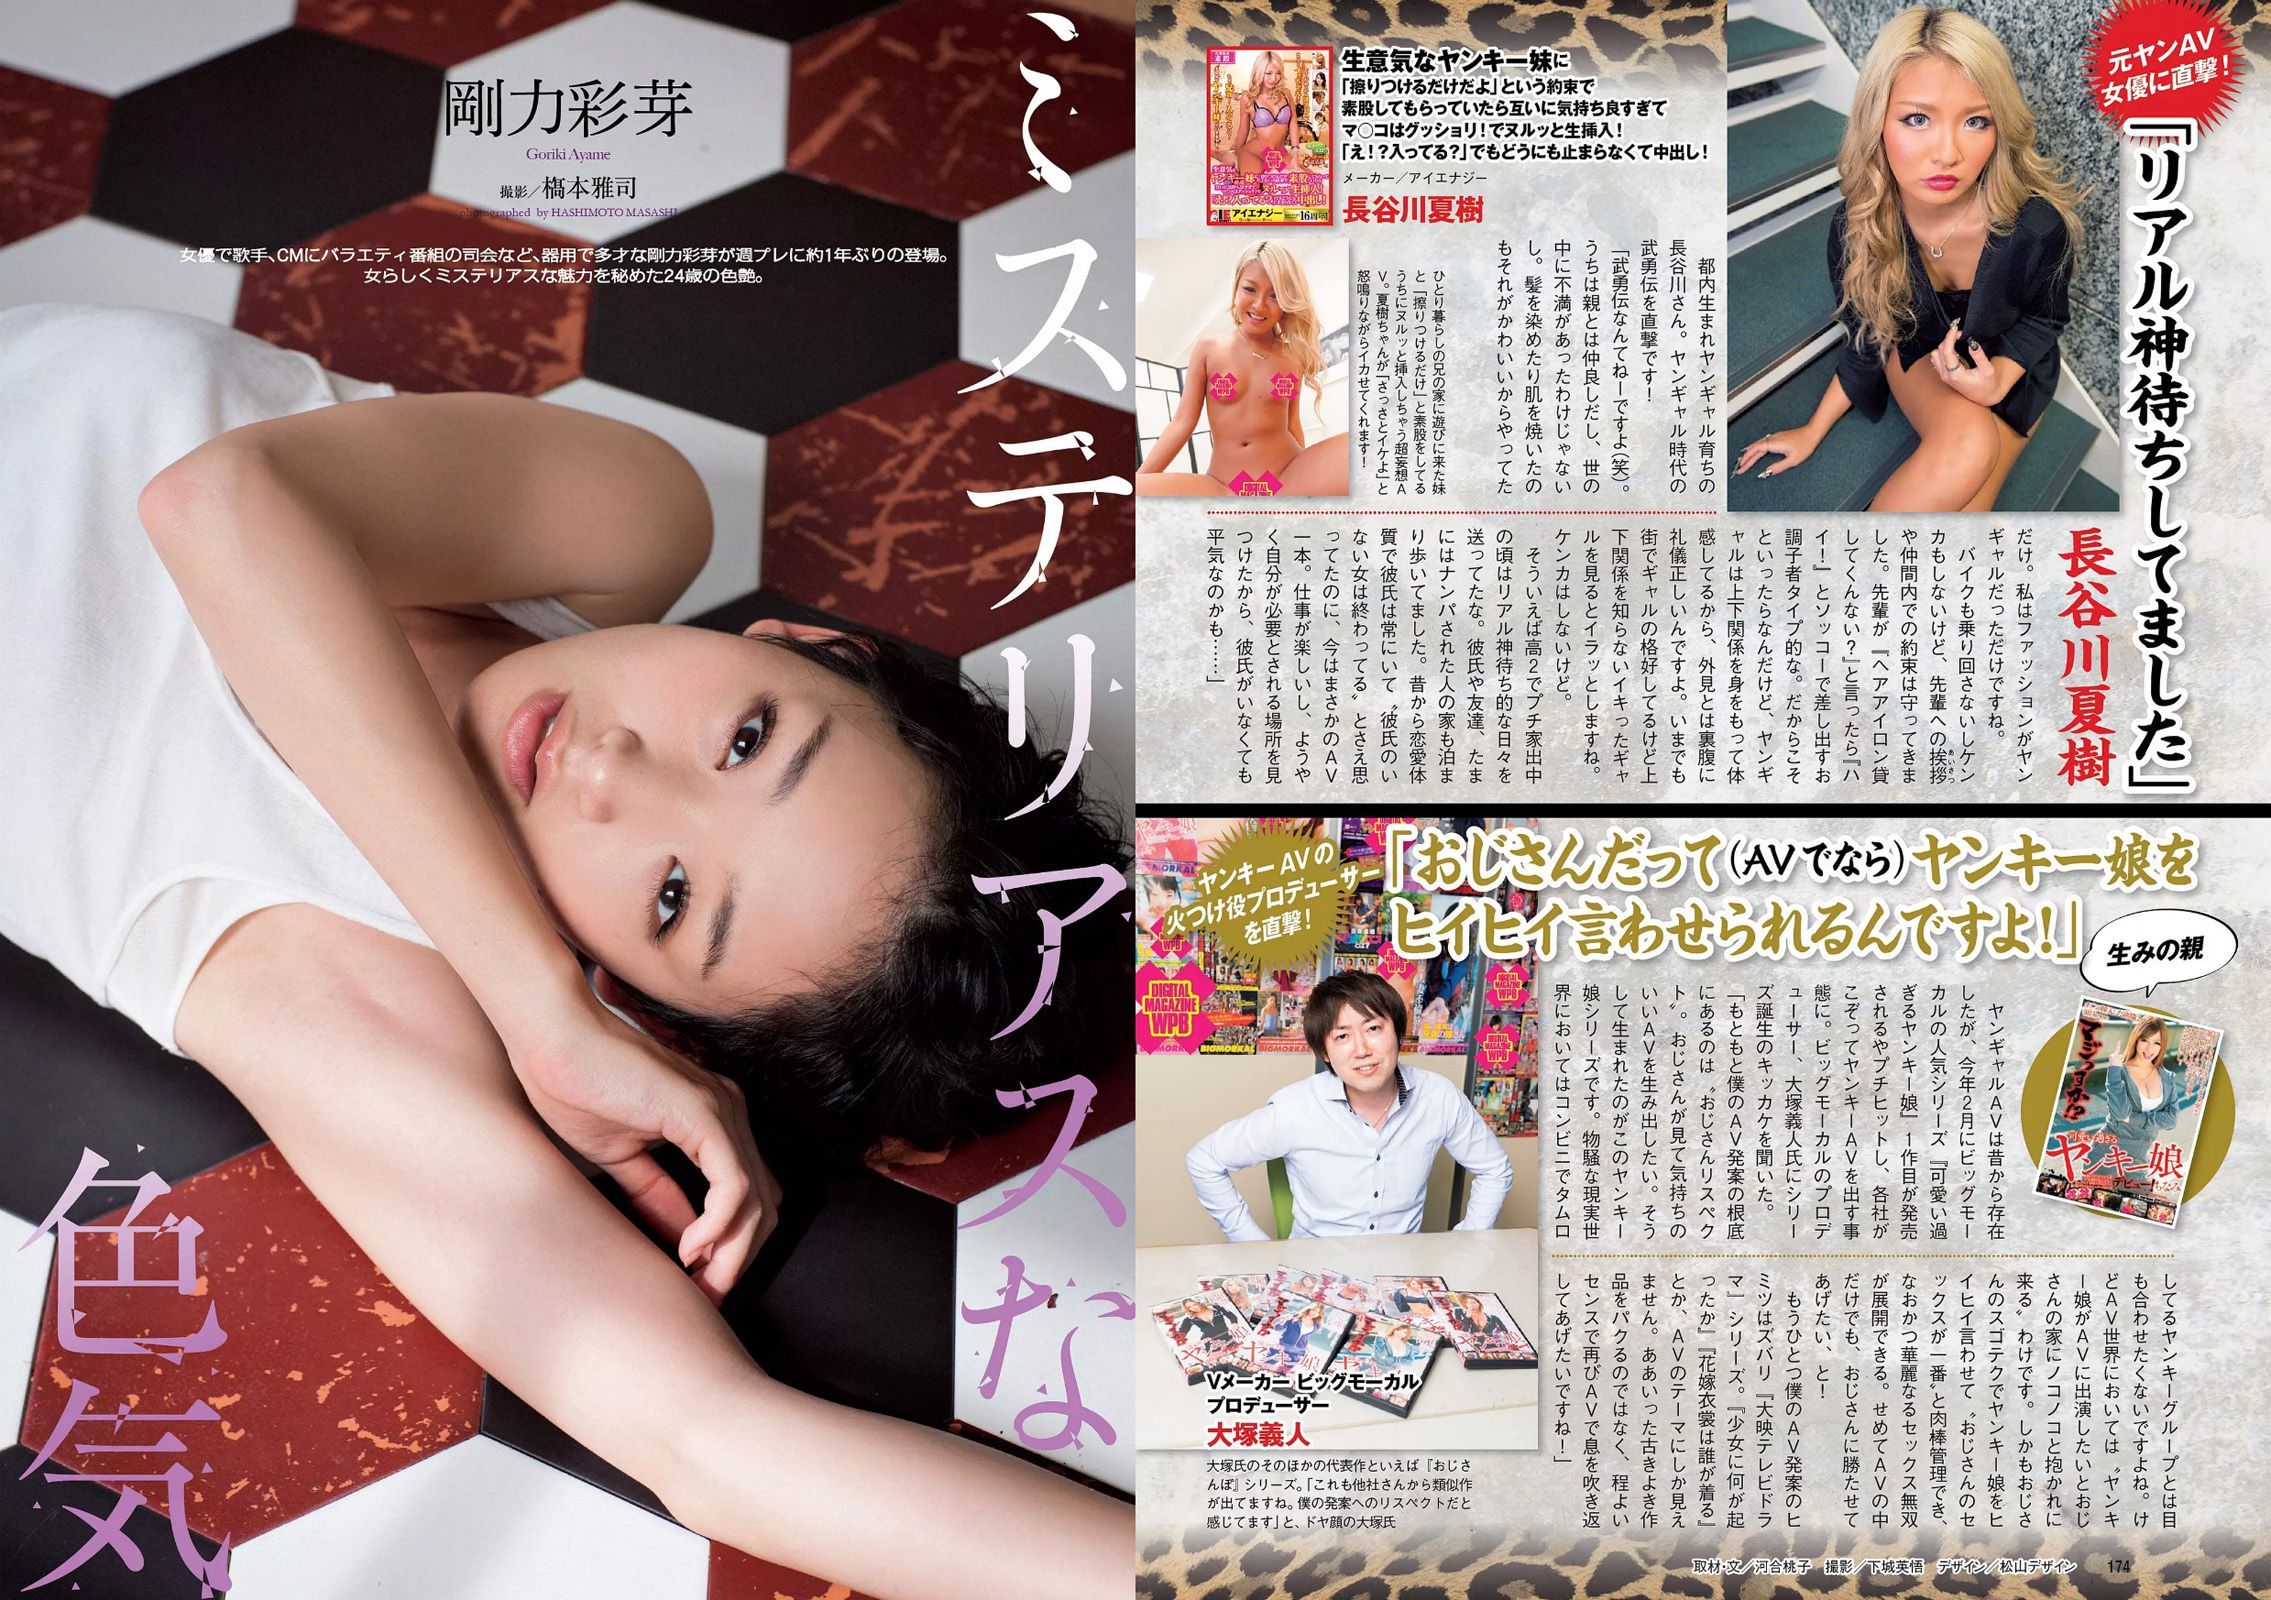 Ren Ishikawa Hiroko Sato Rui Kumae Rio Uchida Ikumi Hisamatsu Ayame Goriki Fumika Fukuma [Weekly Playboy] 2016 No.52 Photograph Page 12 No.f1d26d